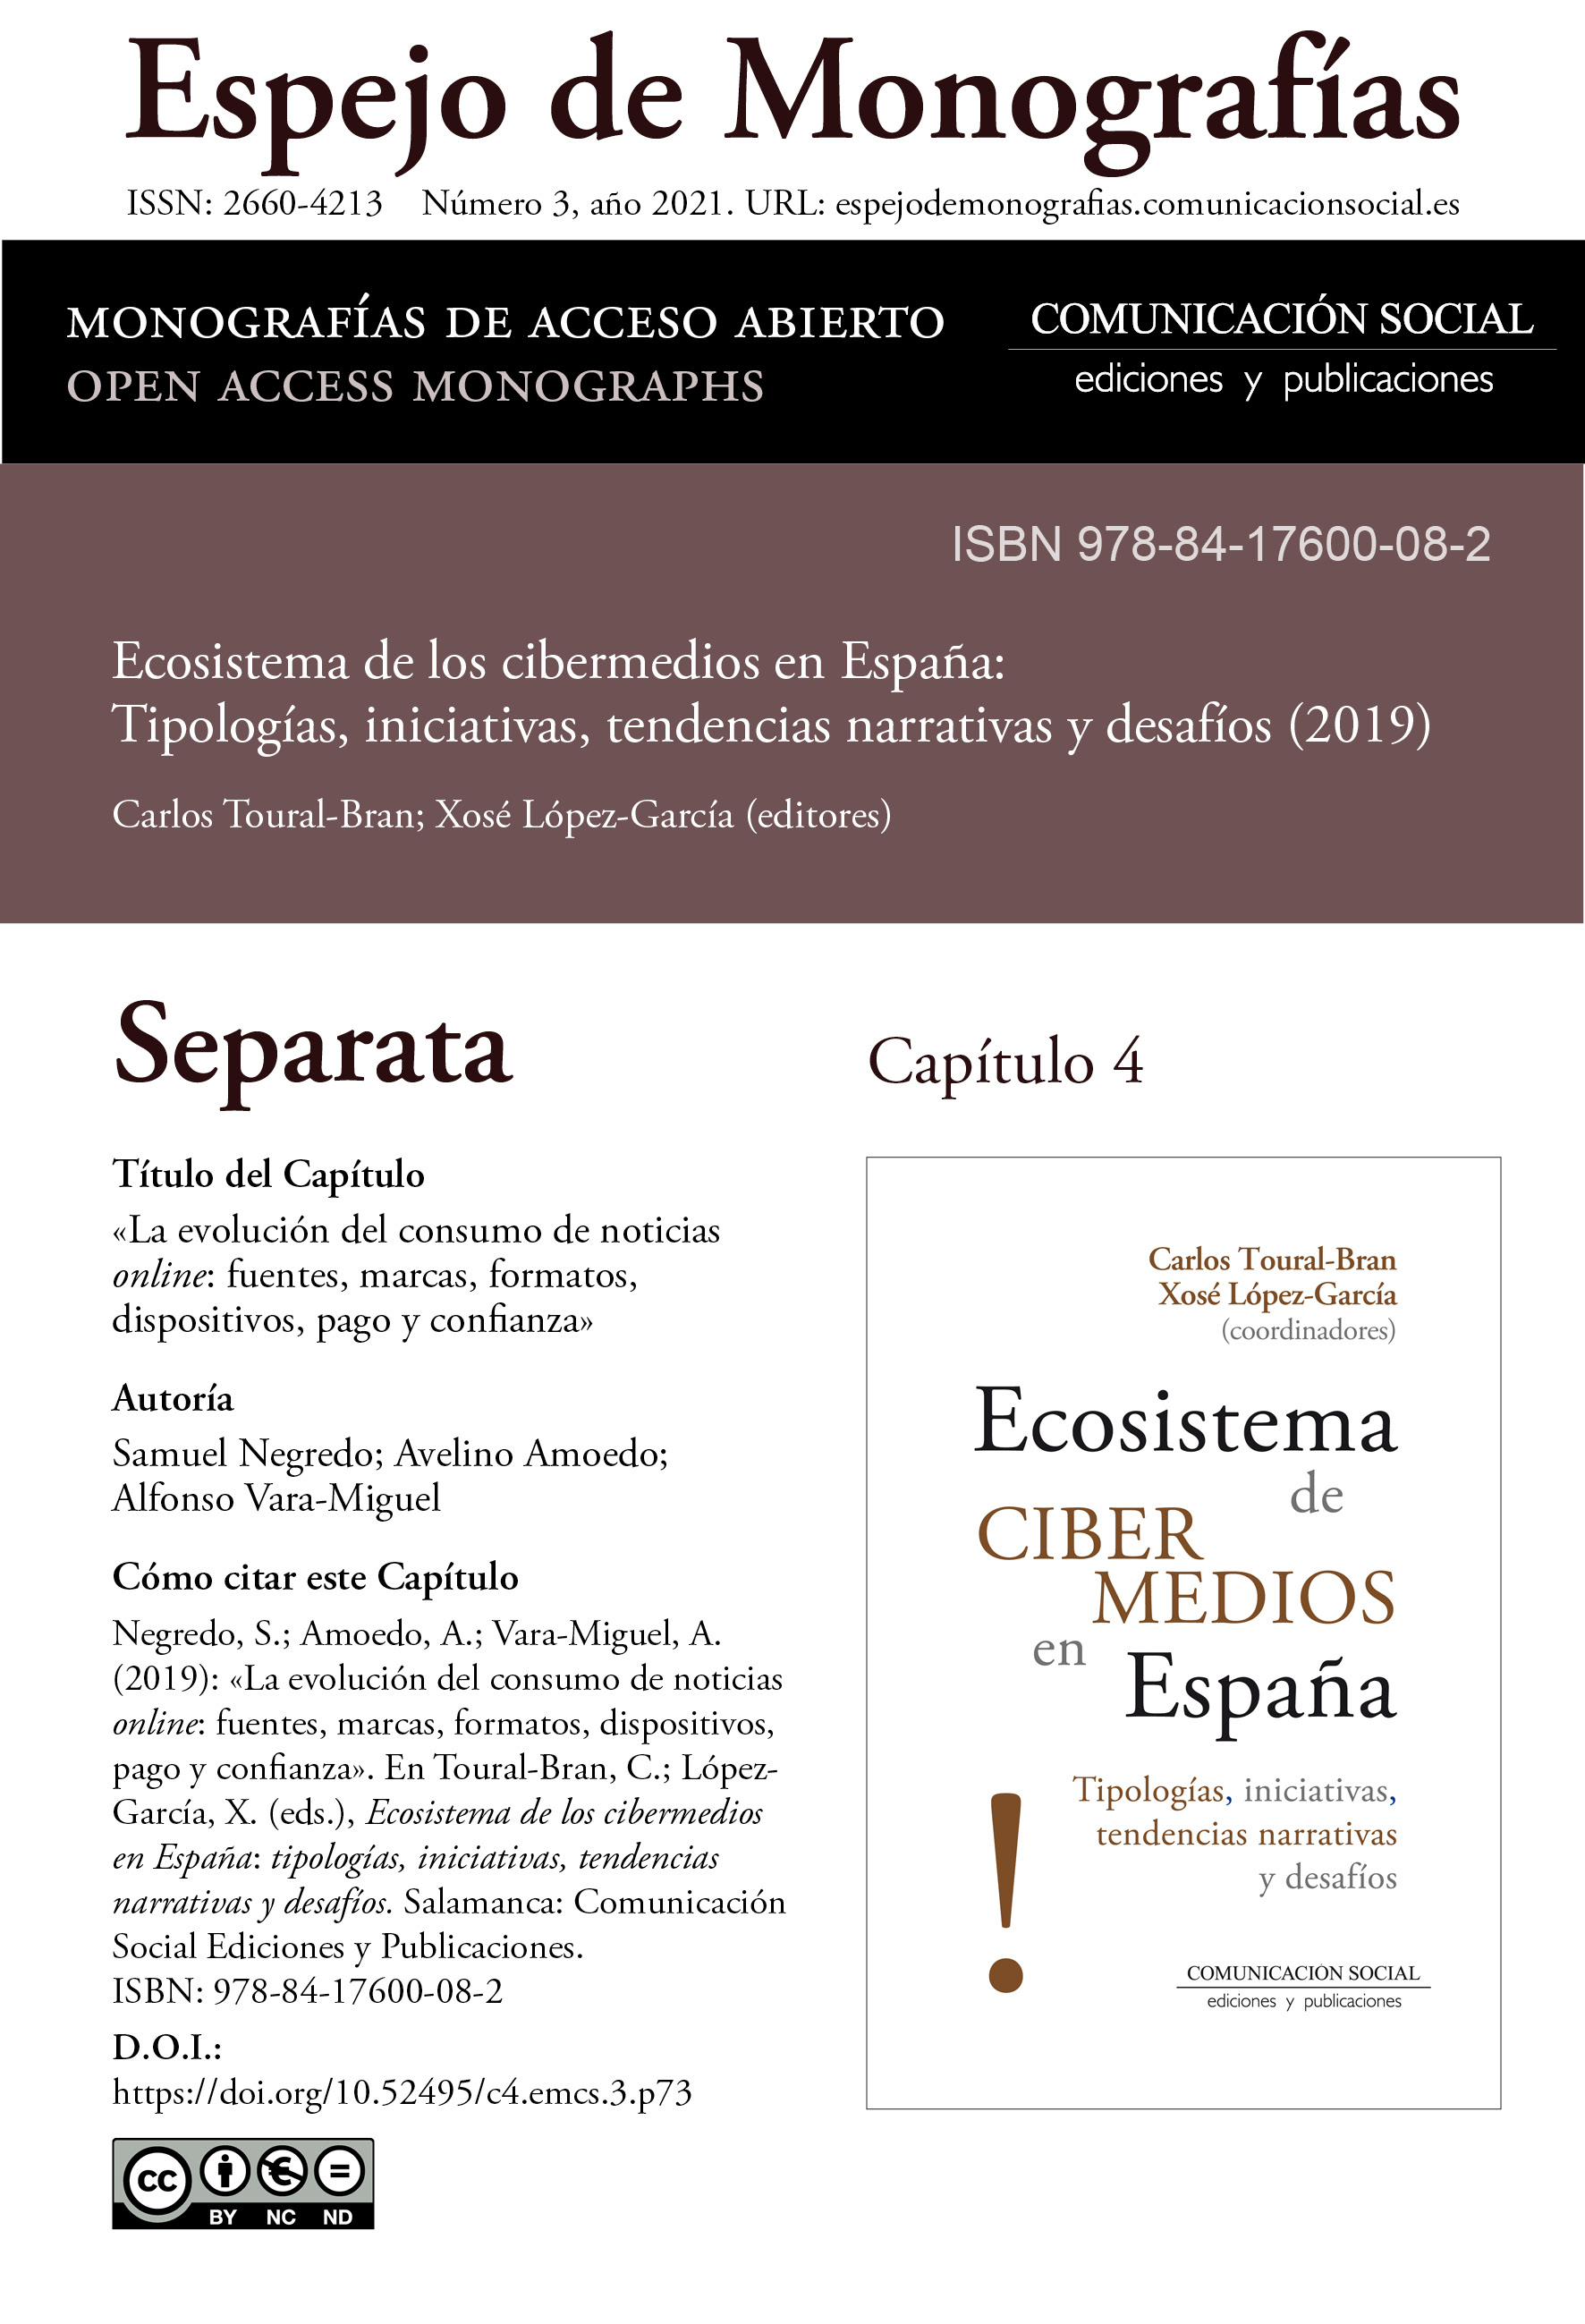 Separata del Capítulo 4 correspondiente a la monografía Ecosistema de cibermedios en España